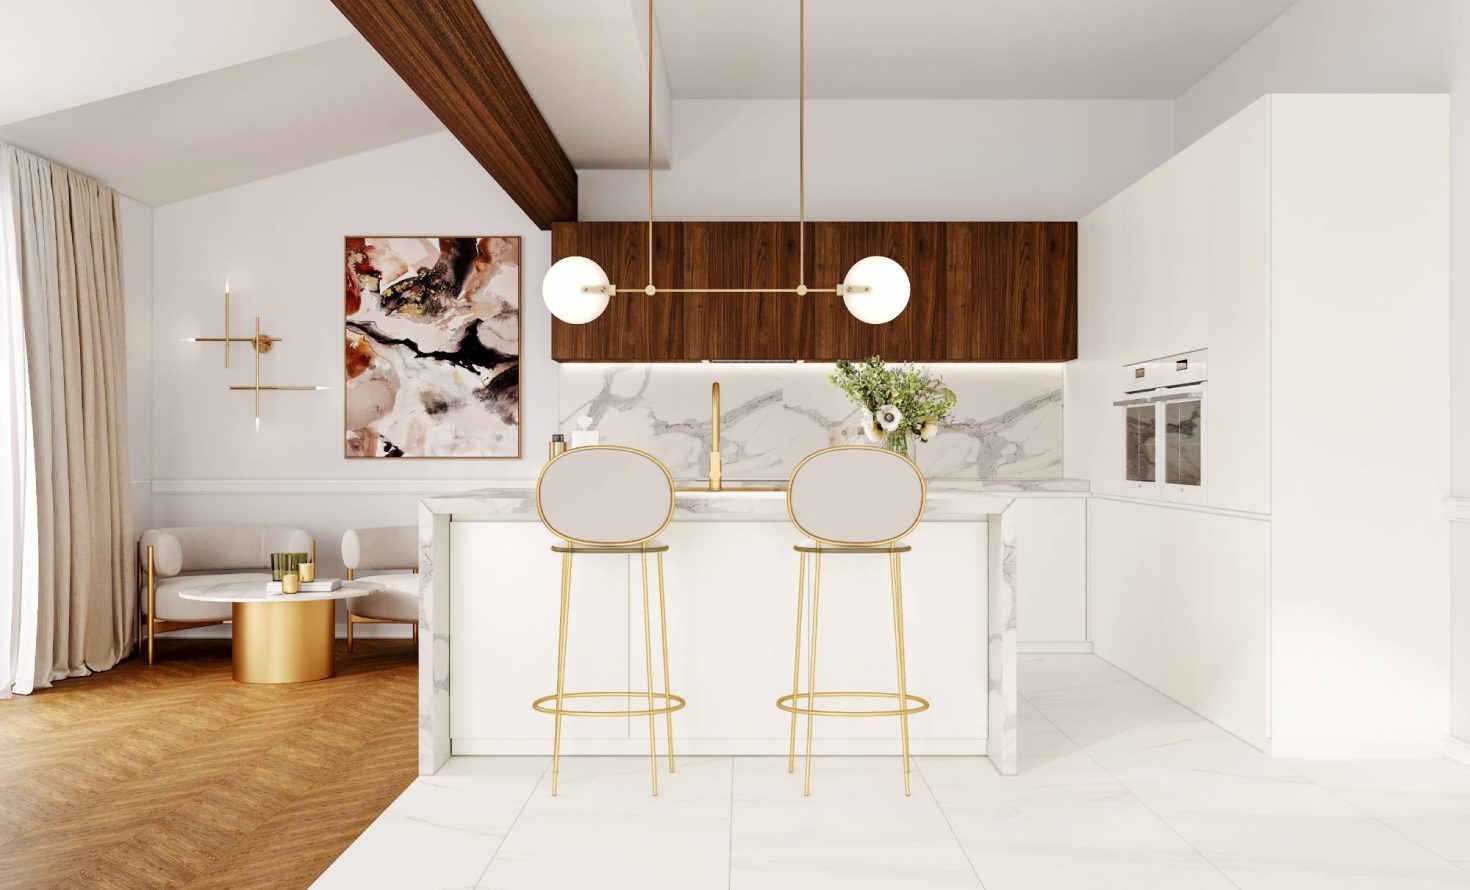 SIKO Mramorová kuchyně s ostrůvkem, velkoformátový obklad a dlažba v imitaci světlého mramoru, dřevěné a zlaté doplňky, vysoké barové židle a barový pult